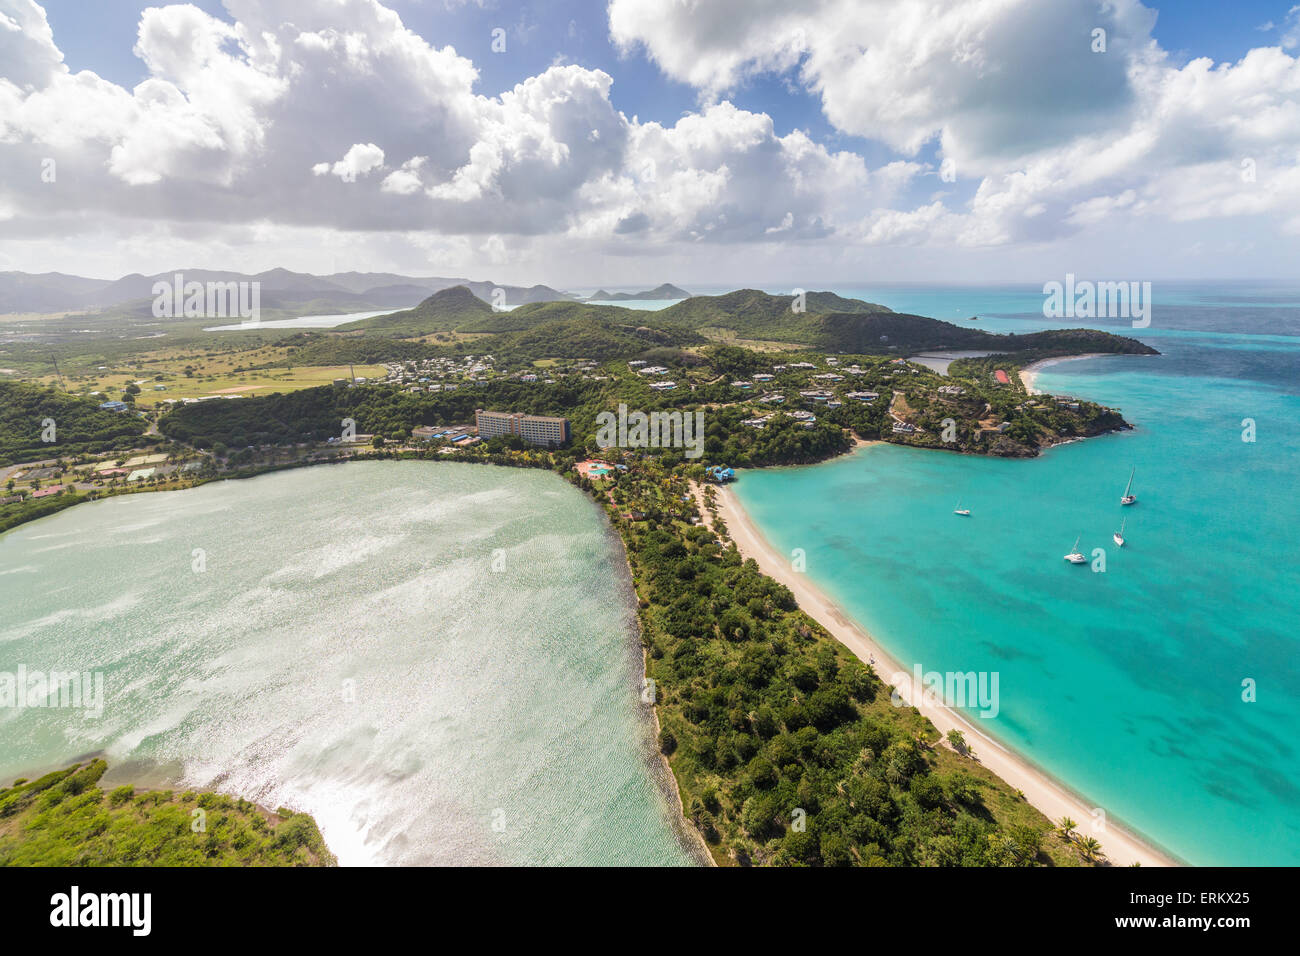 Vista aérea de una laguna en la isla caribeña de Antigua, una delgada línea de arena divide una pequeña cuenca de sal del mar, Antigua Foto de stock